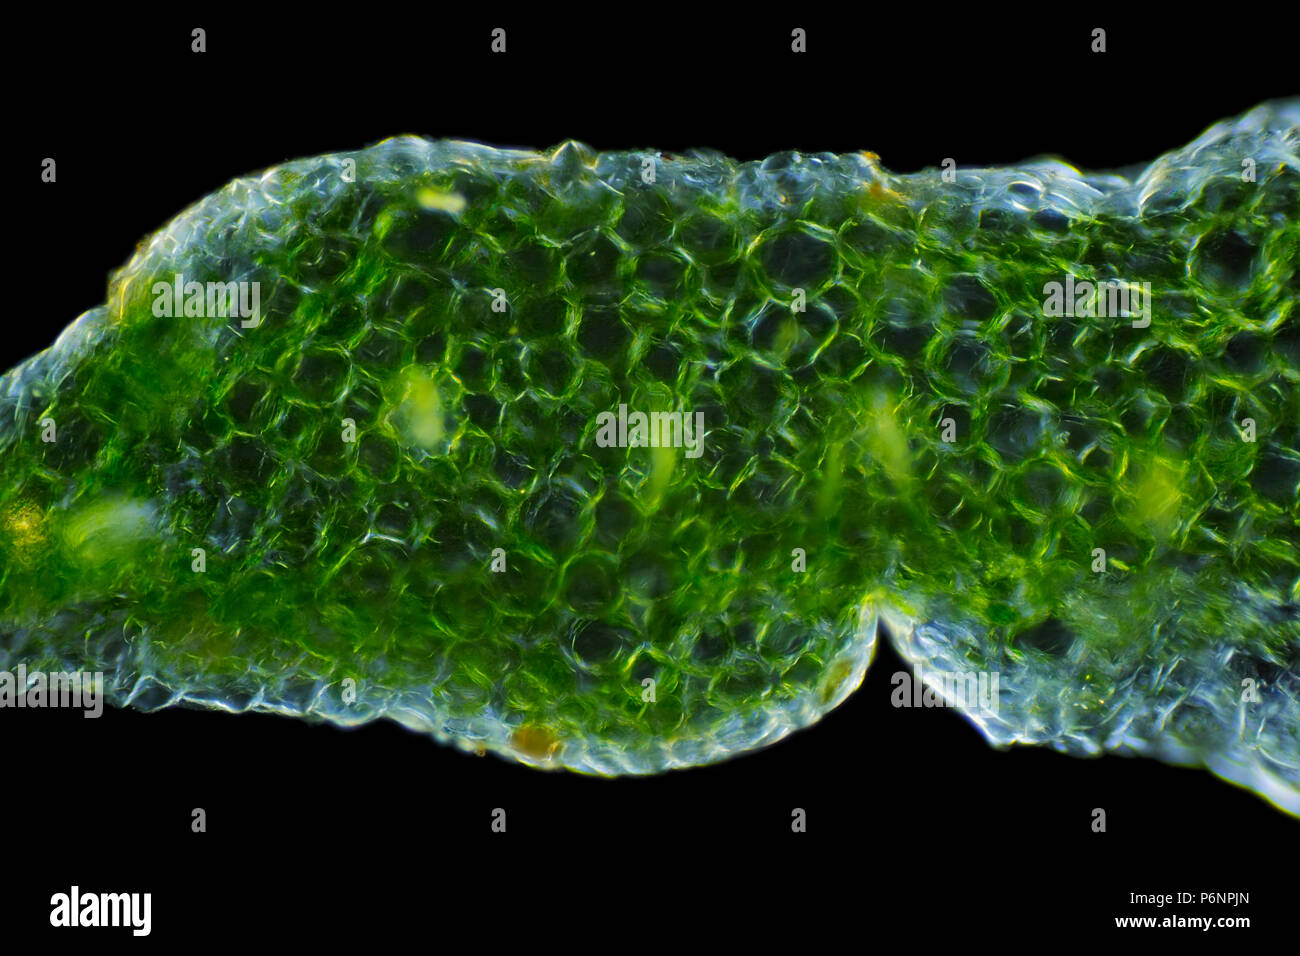 Mikroskopische Ansicht einer auffälligen Fetthenne (Hylotelephium spectabile) Blatt Querschnitt. Polarisiertes Licht, gekreuzten Polarisatoren. Stockfoto